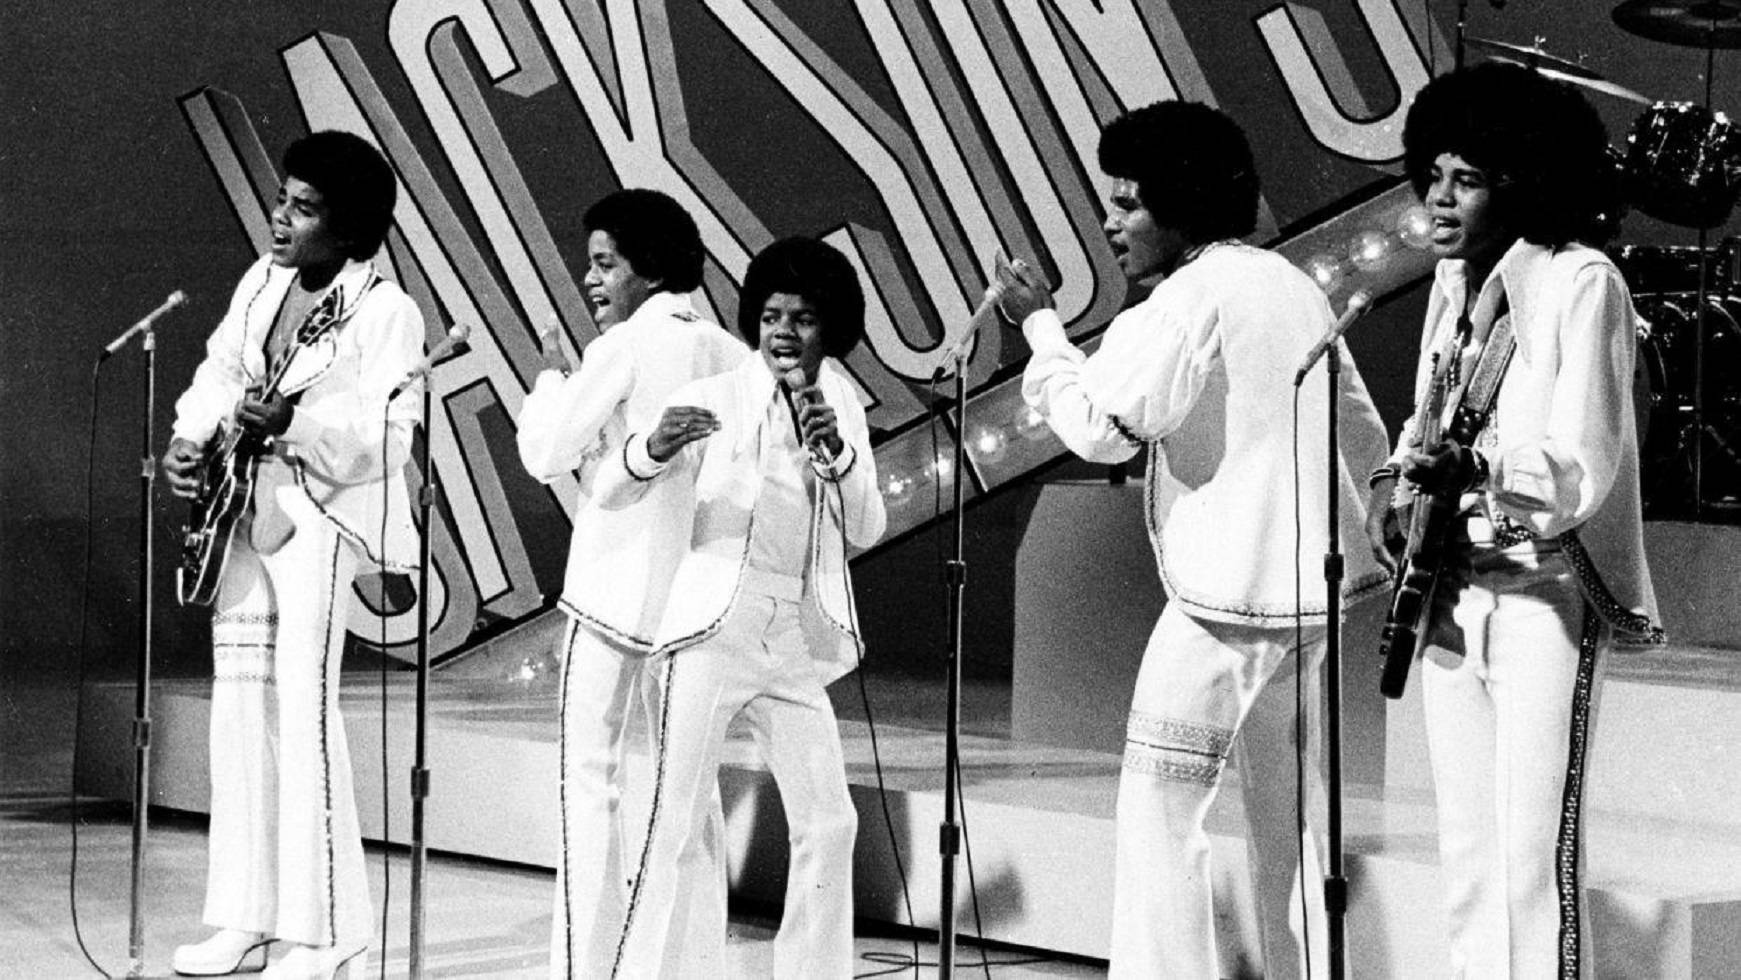 Jackson 5 At Apollo Theater 1969 Wallpaper